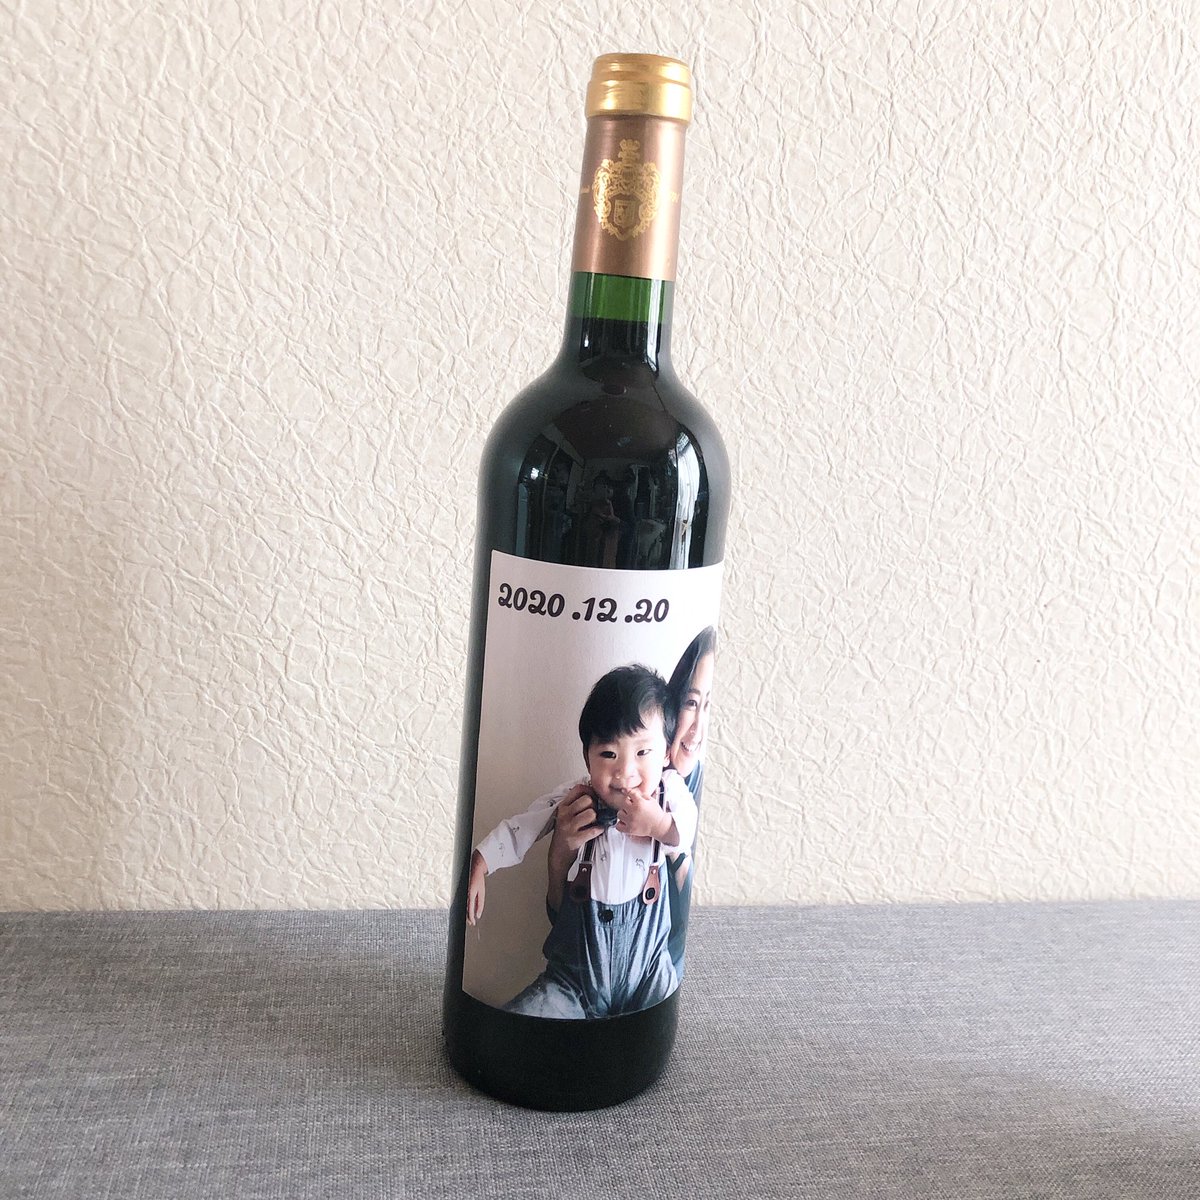 よもちゃん(@sakura_maiotiru )が誕生日プレゼントくれました(;ω;)♡ワインまだ開けてなくてごめんね?ゆっくり飲めるときに開けたいと思います?

ちびうさもめっちゃ可愛い❤️
ワインのラベルも手作りで貼ってくれたんだって(;ω;)

めちゃくちゃ嬉しい 